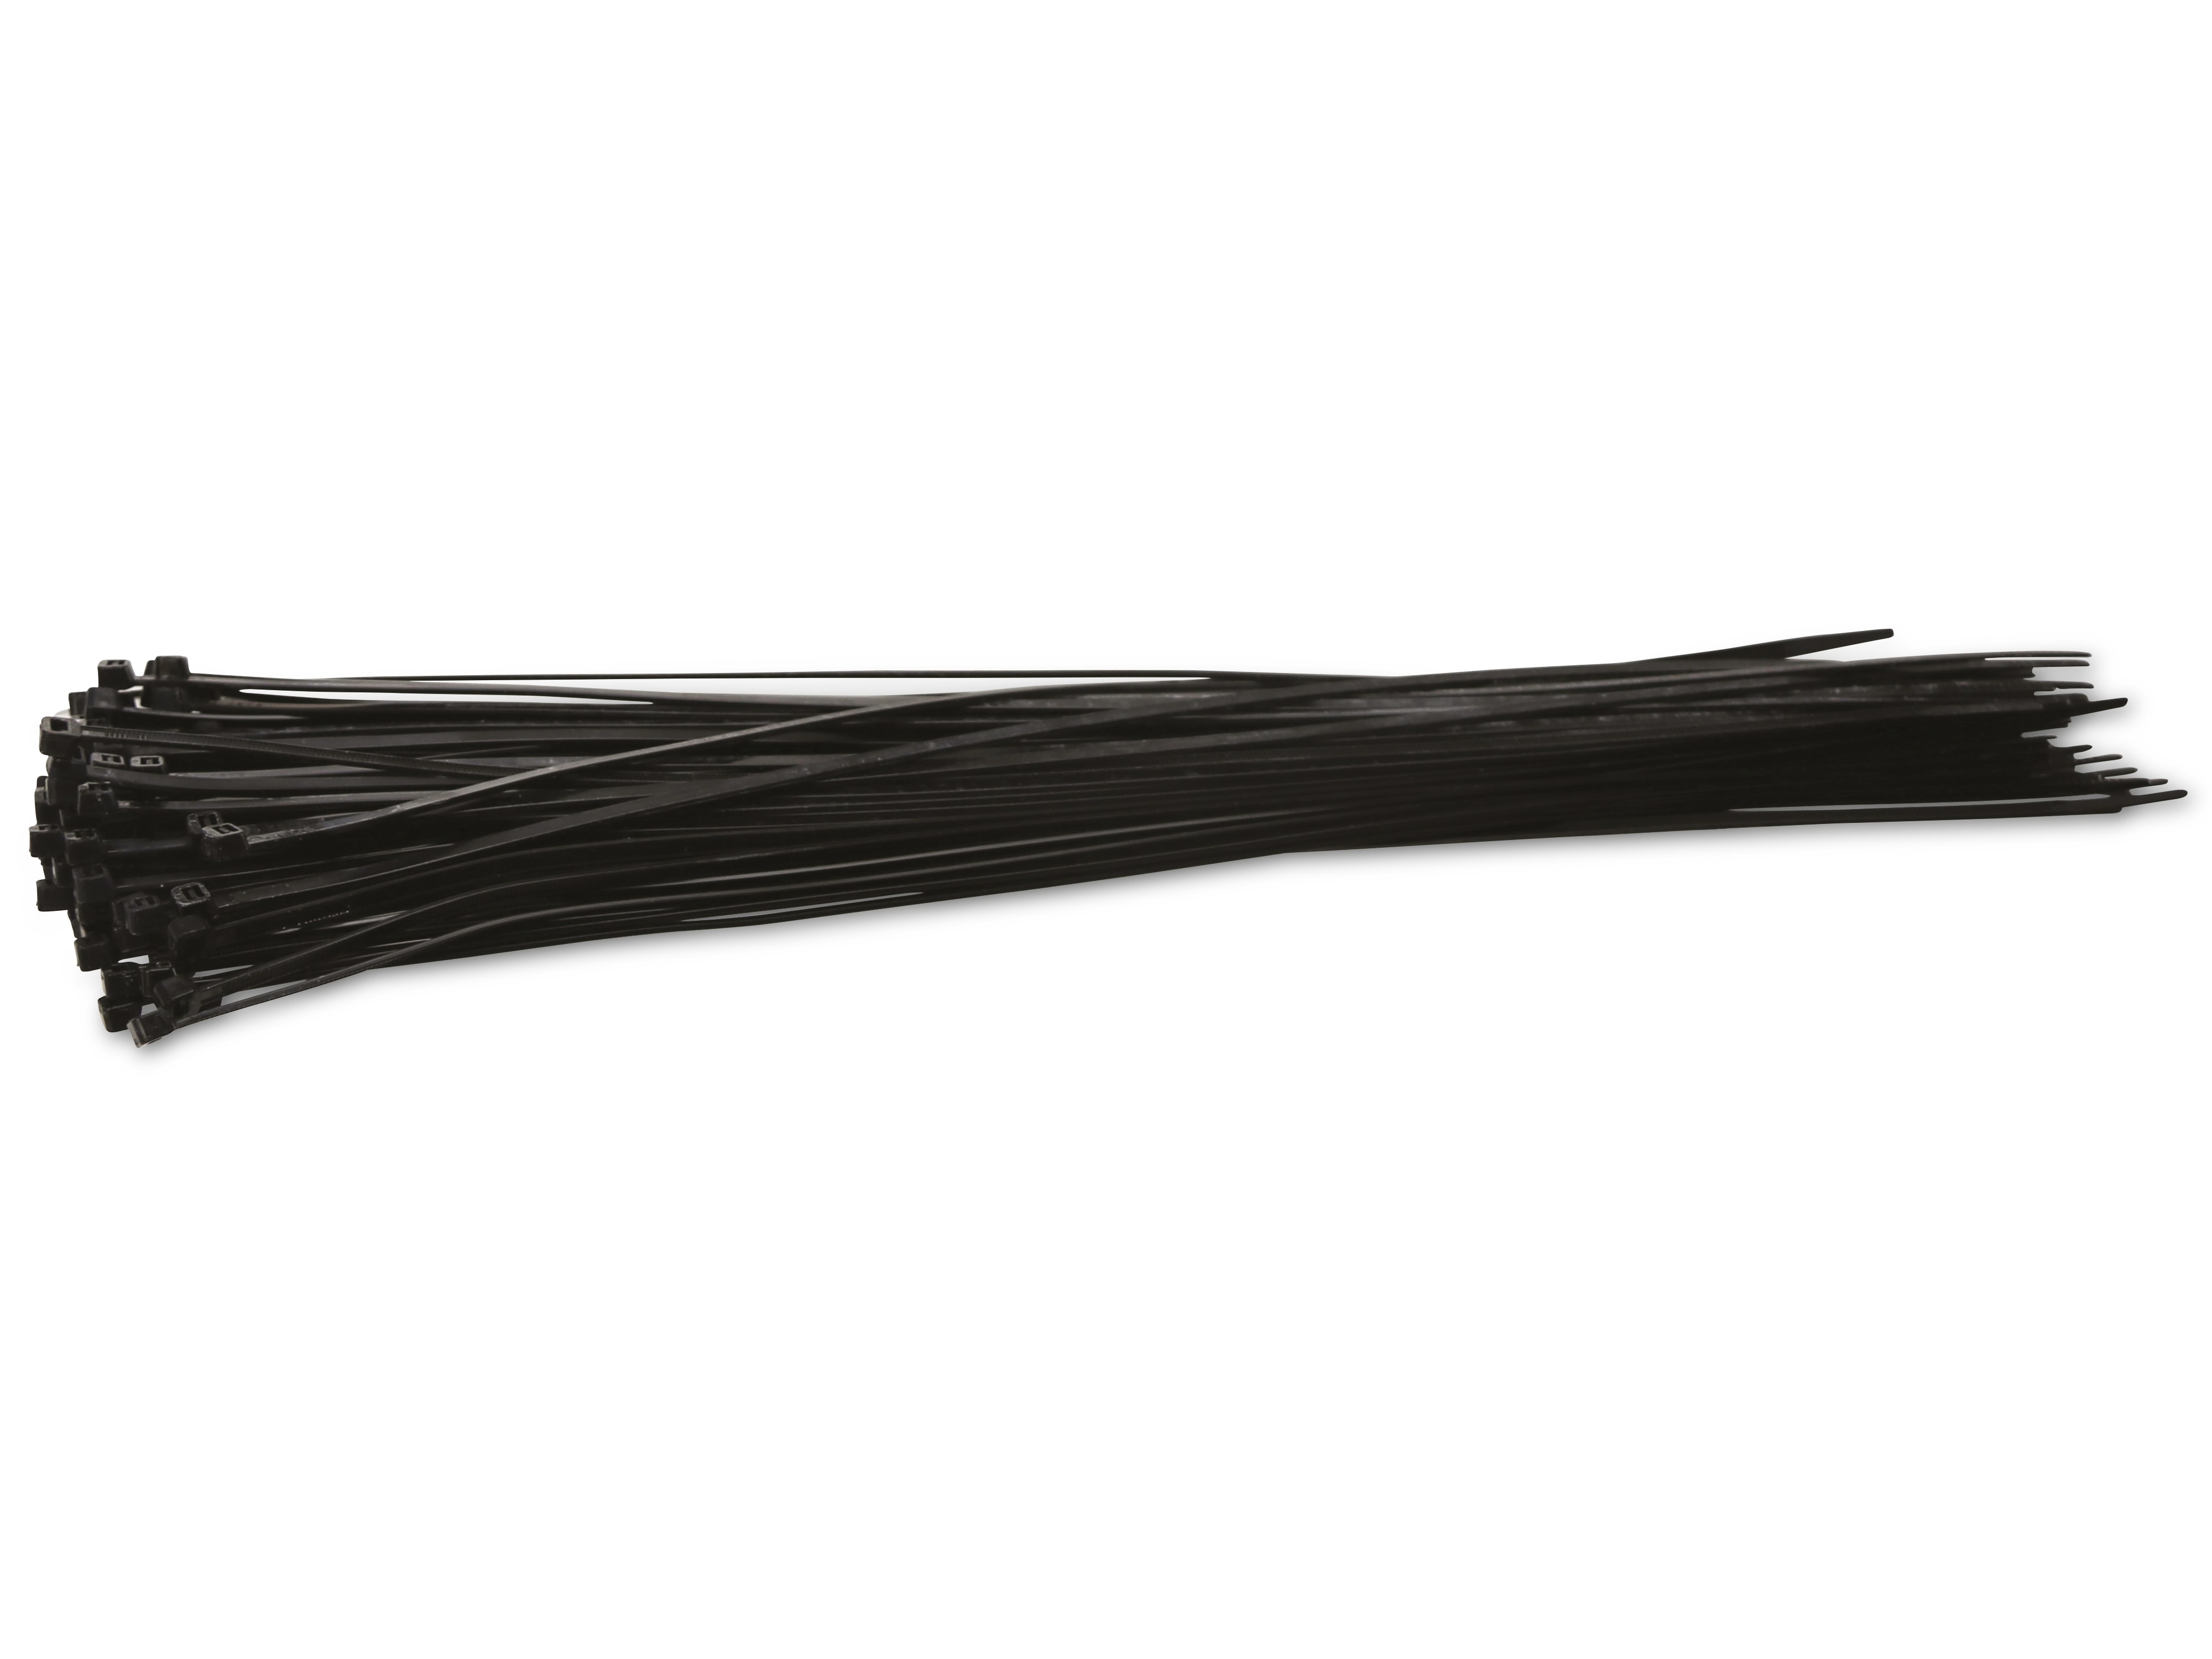 KSS Kabelbinder-Sortiment Polyamid 6.6, schwarz, 432x4,8, UV-beständig, 100 Stück